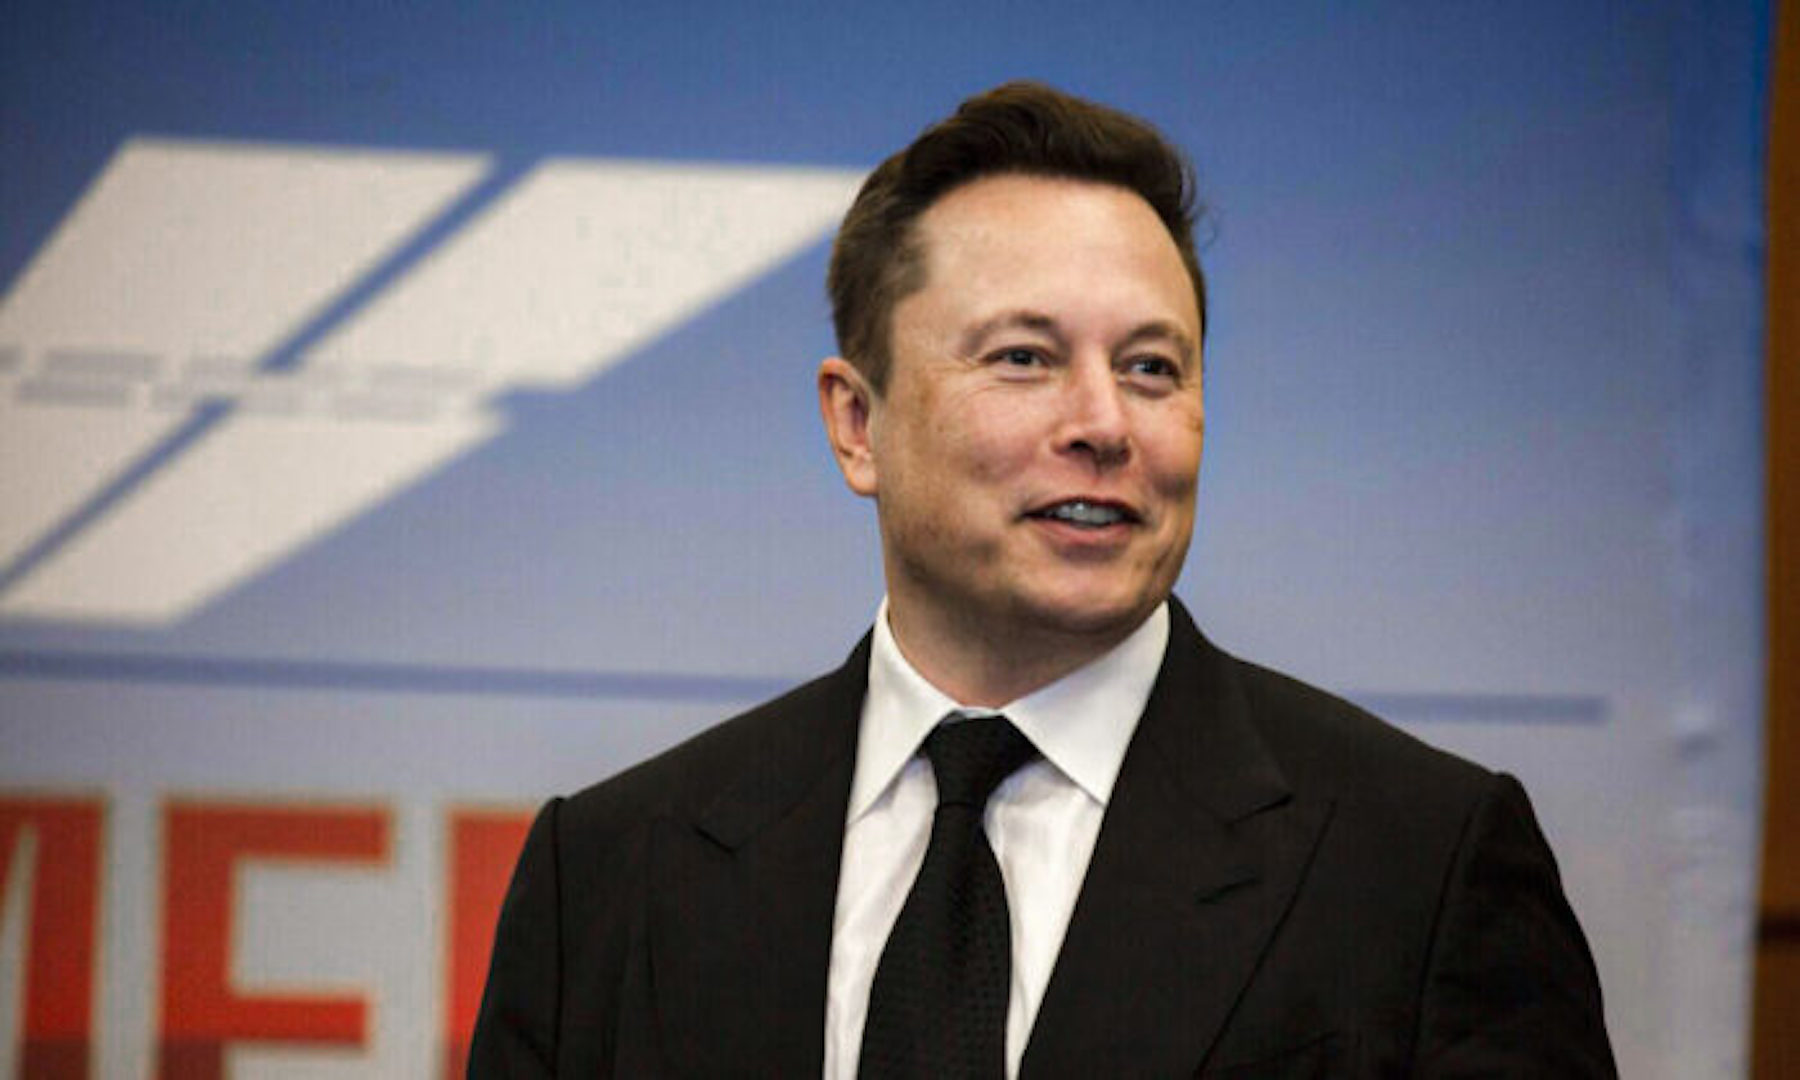 Elon Musk Sued for $258 Billion Over Alleged Dogecoin Pyramid Scheme